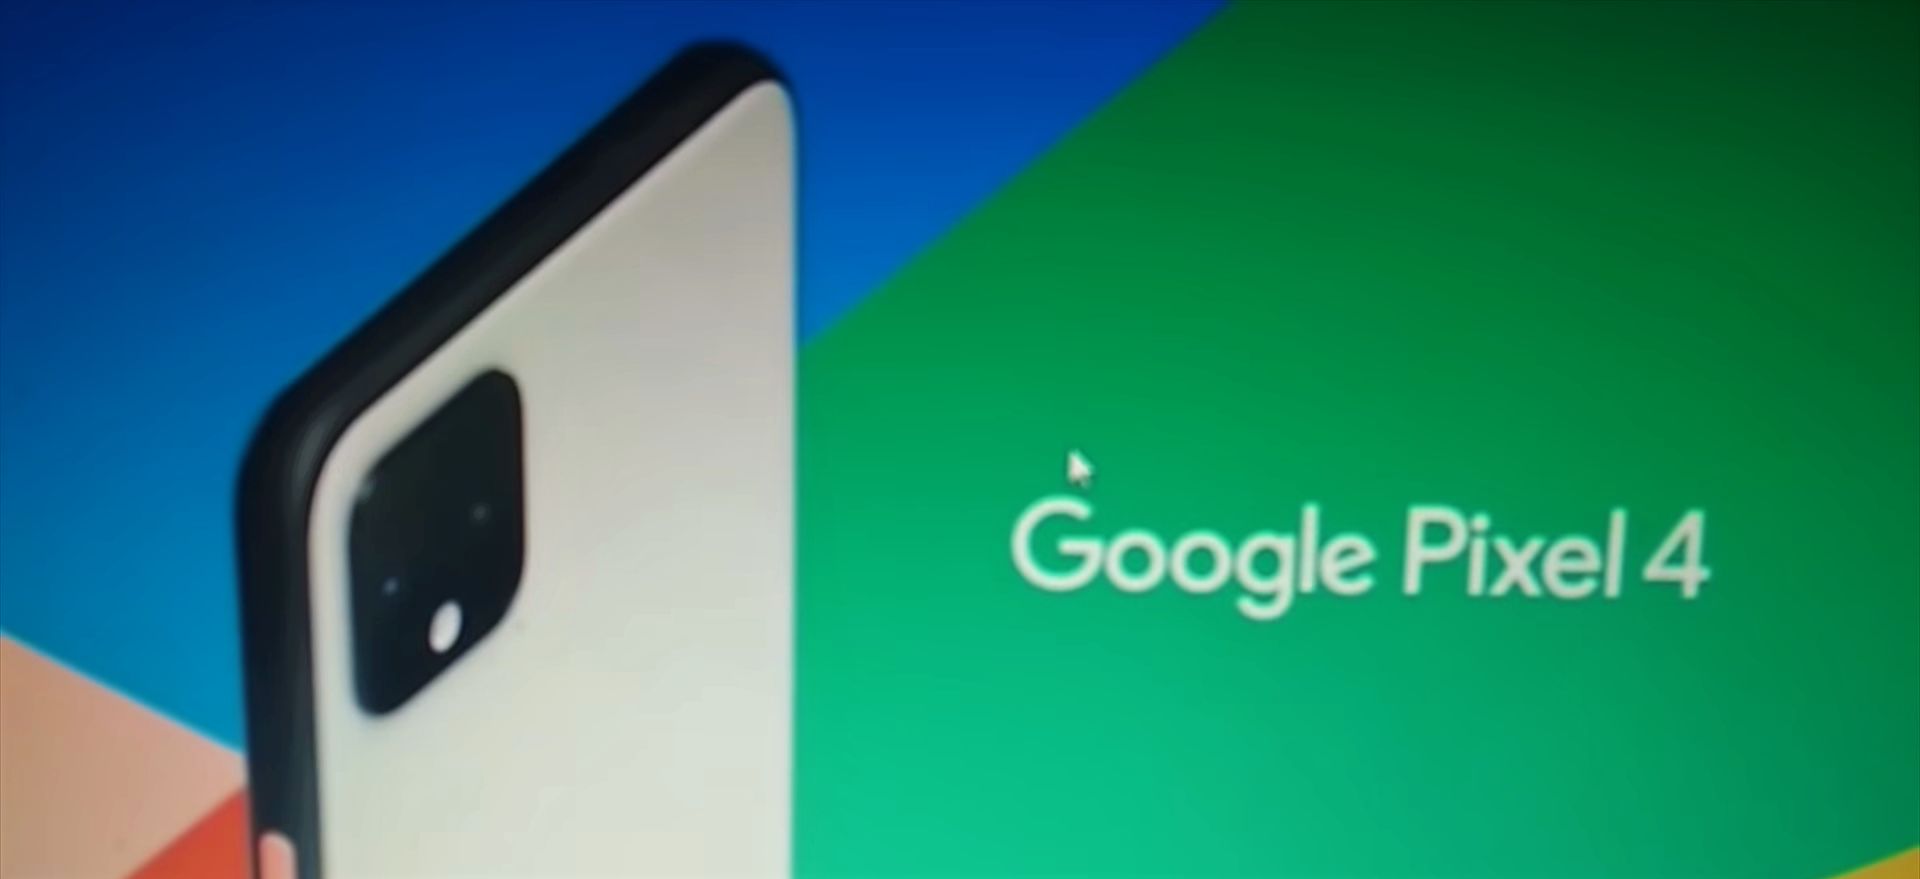 Ecco il video pubblicitario del Google Pixel 4 apparso (per errore) un mese prima del lancio ufficiale